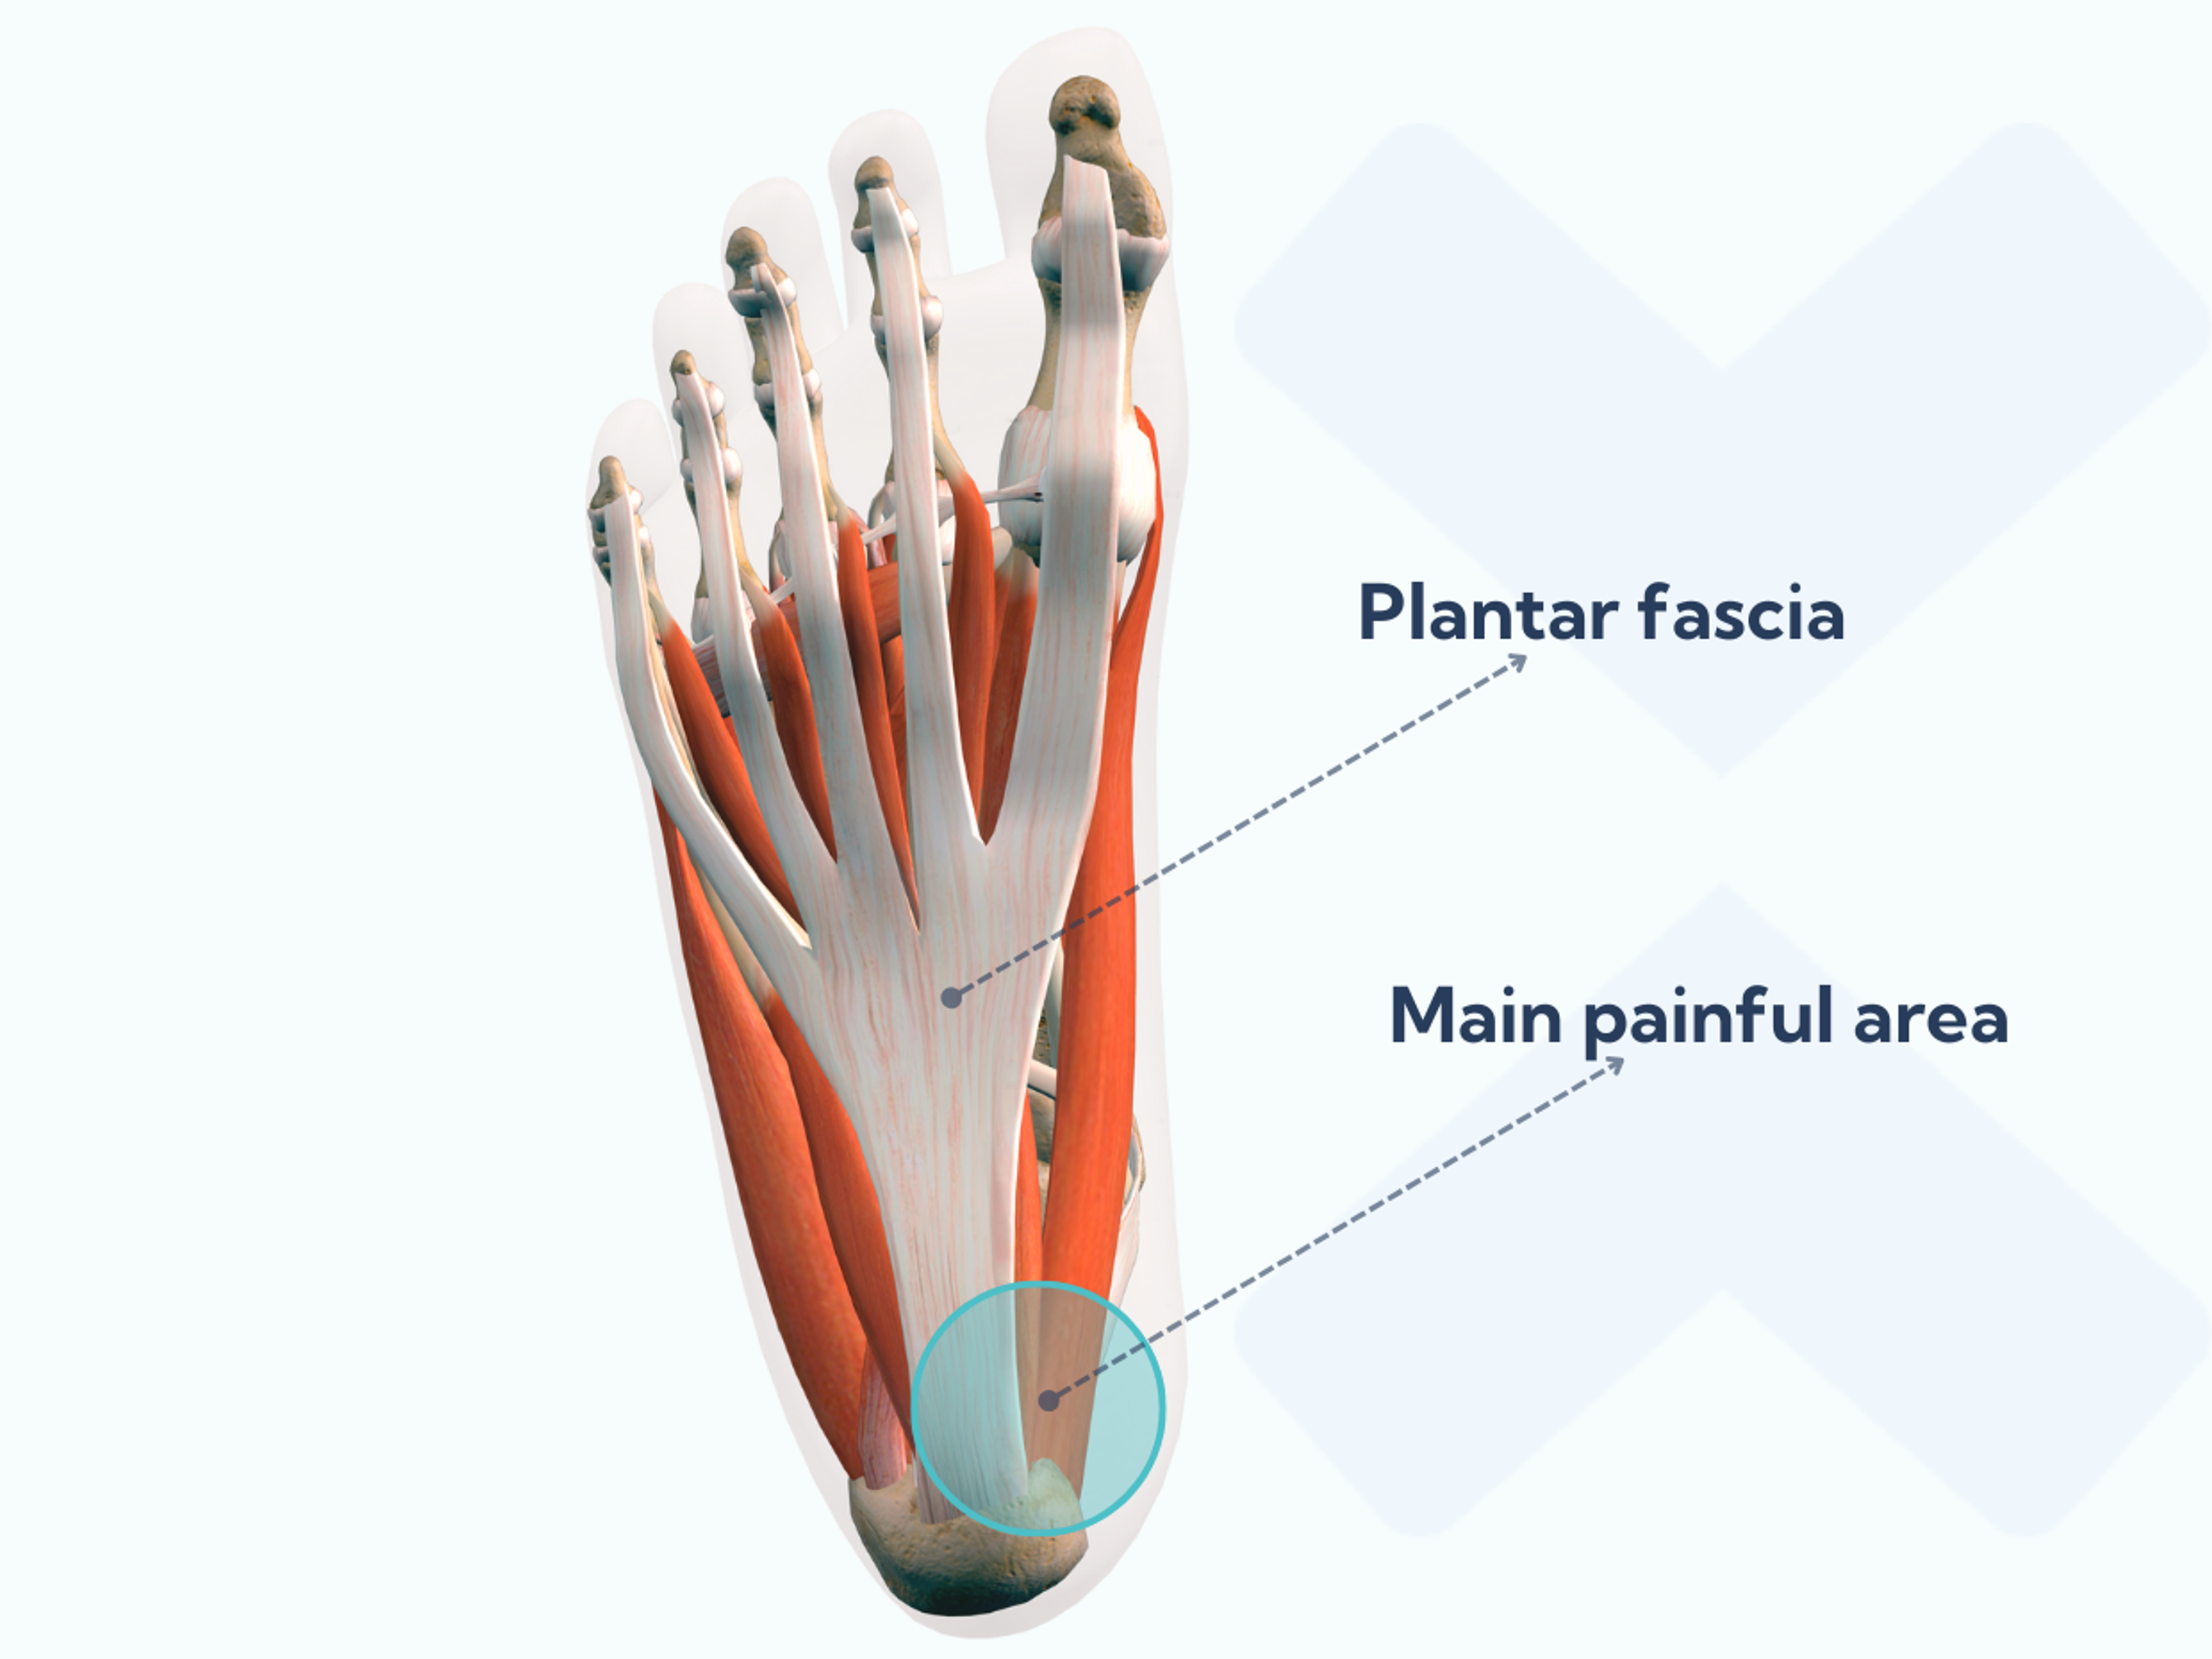 Le fascia plantaire se trouve sous votre pied et s'étend de votre talon à vos talons